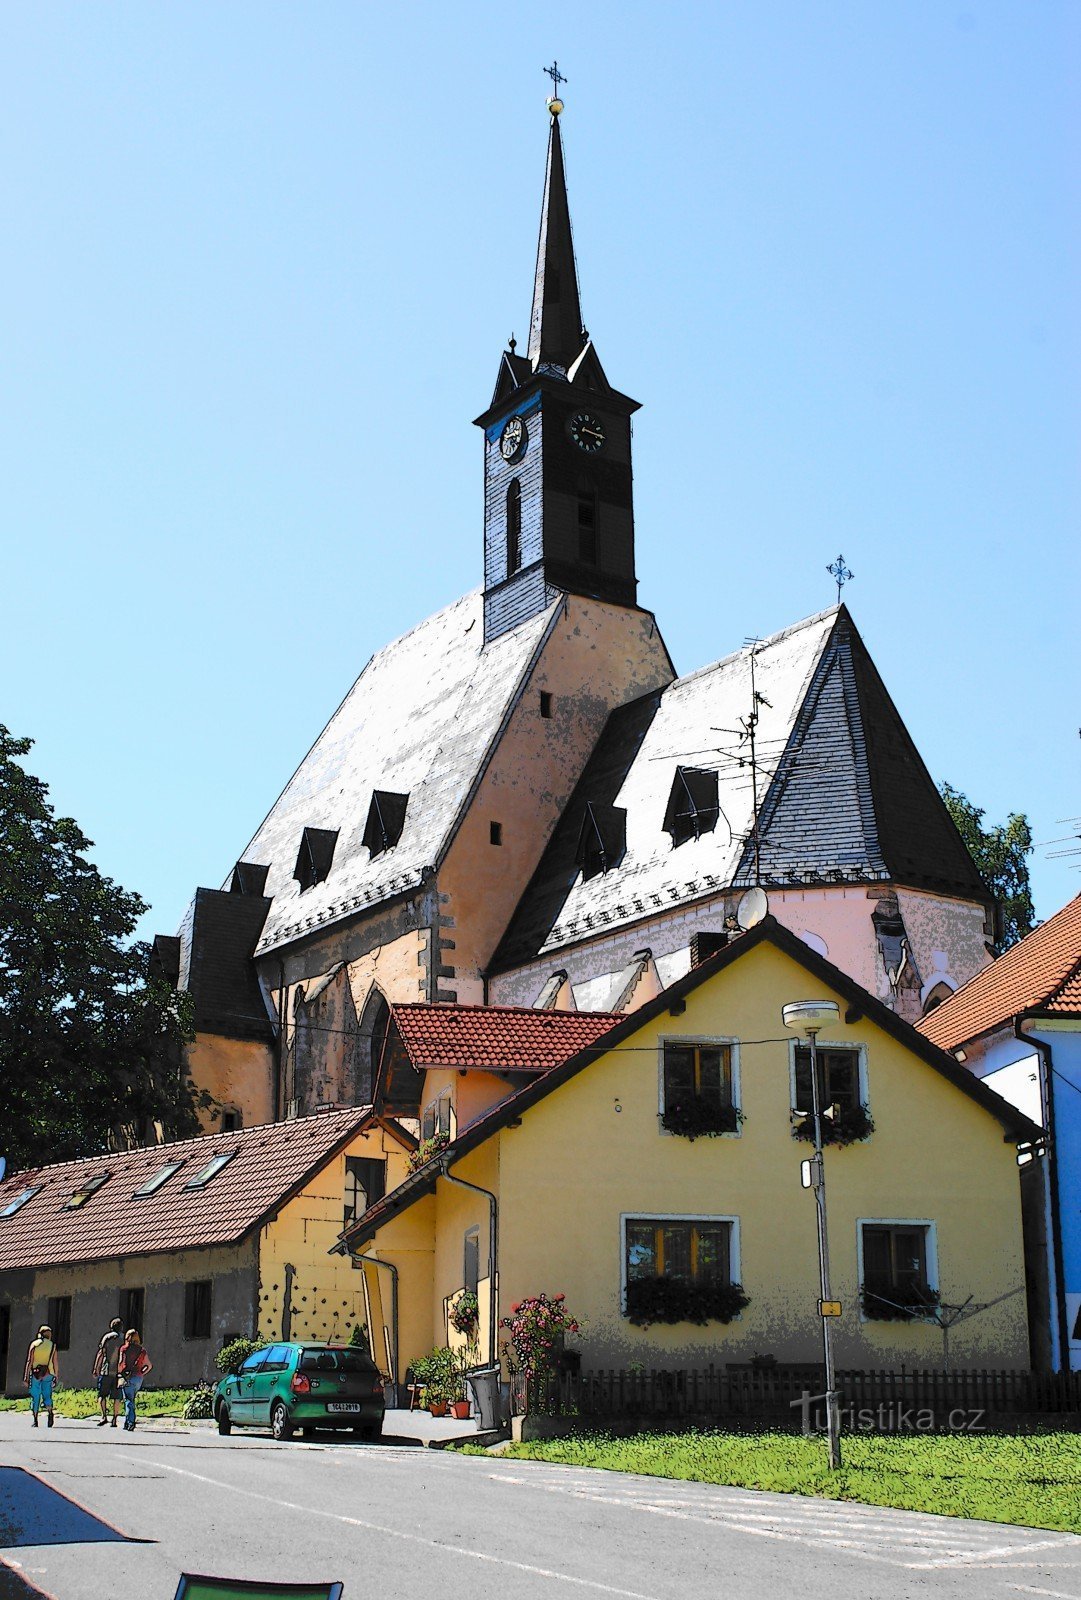 Dolní Dvořiště – εκκλησία του Αγ. Κρίνος